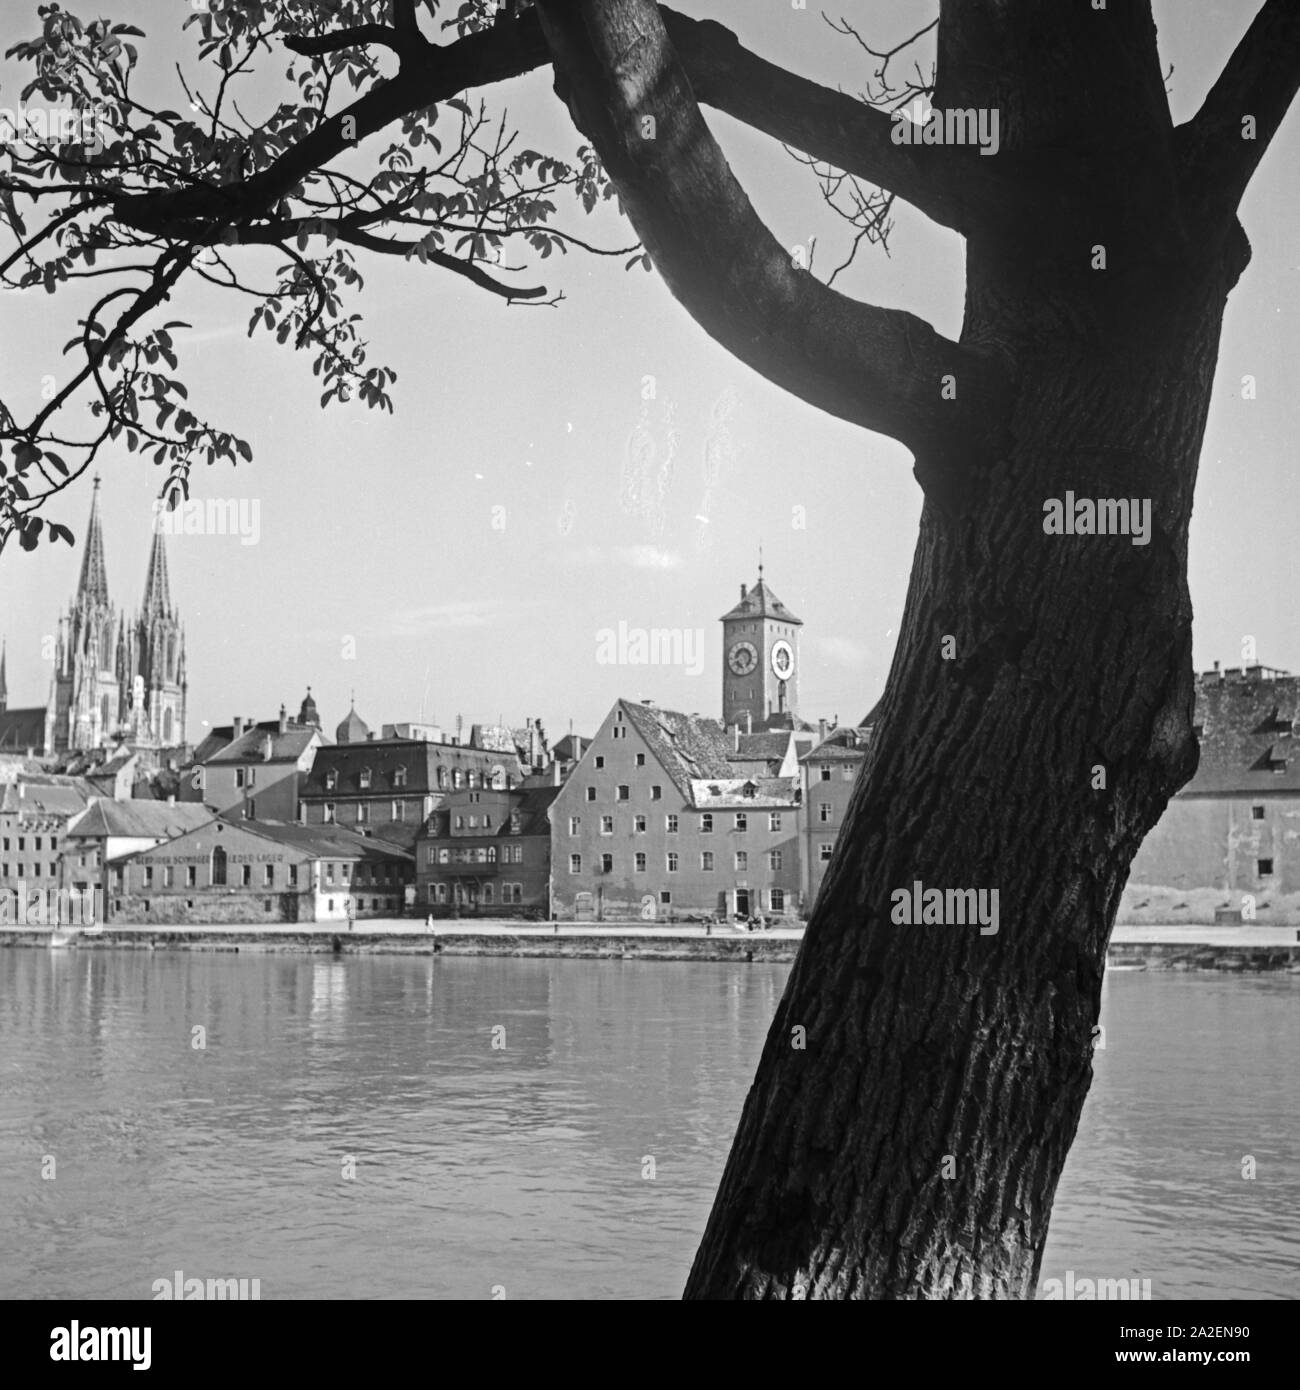 Blick auf das Panorama von Regensburg mit der Donau, dem Dom und Uhrturm dem am alten Rathaus, Deutschland 1930er Jahre. Regensburg skyline con cattedrale, fiume Daunbe e la torre dell'orologio del municipio della città vecchia, Germania 1930s. Foto Stock